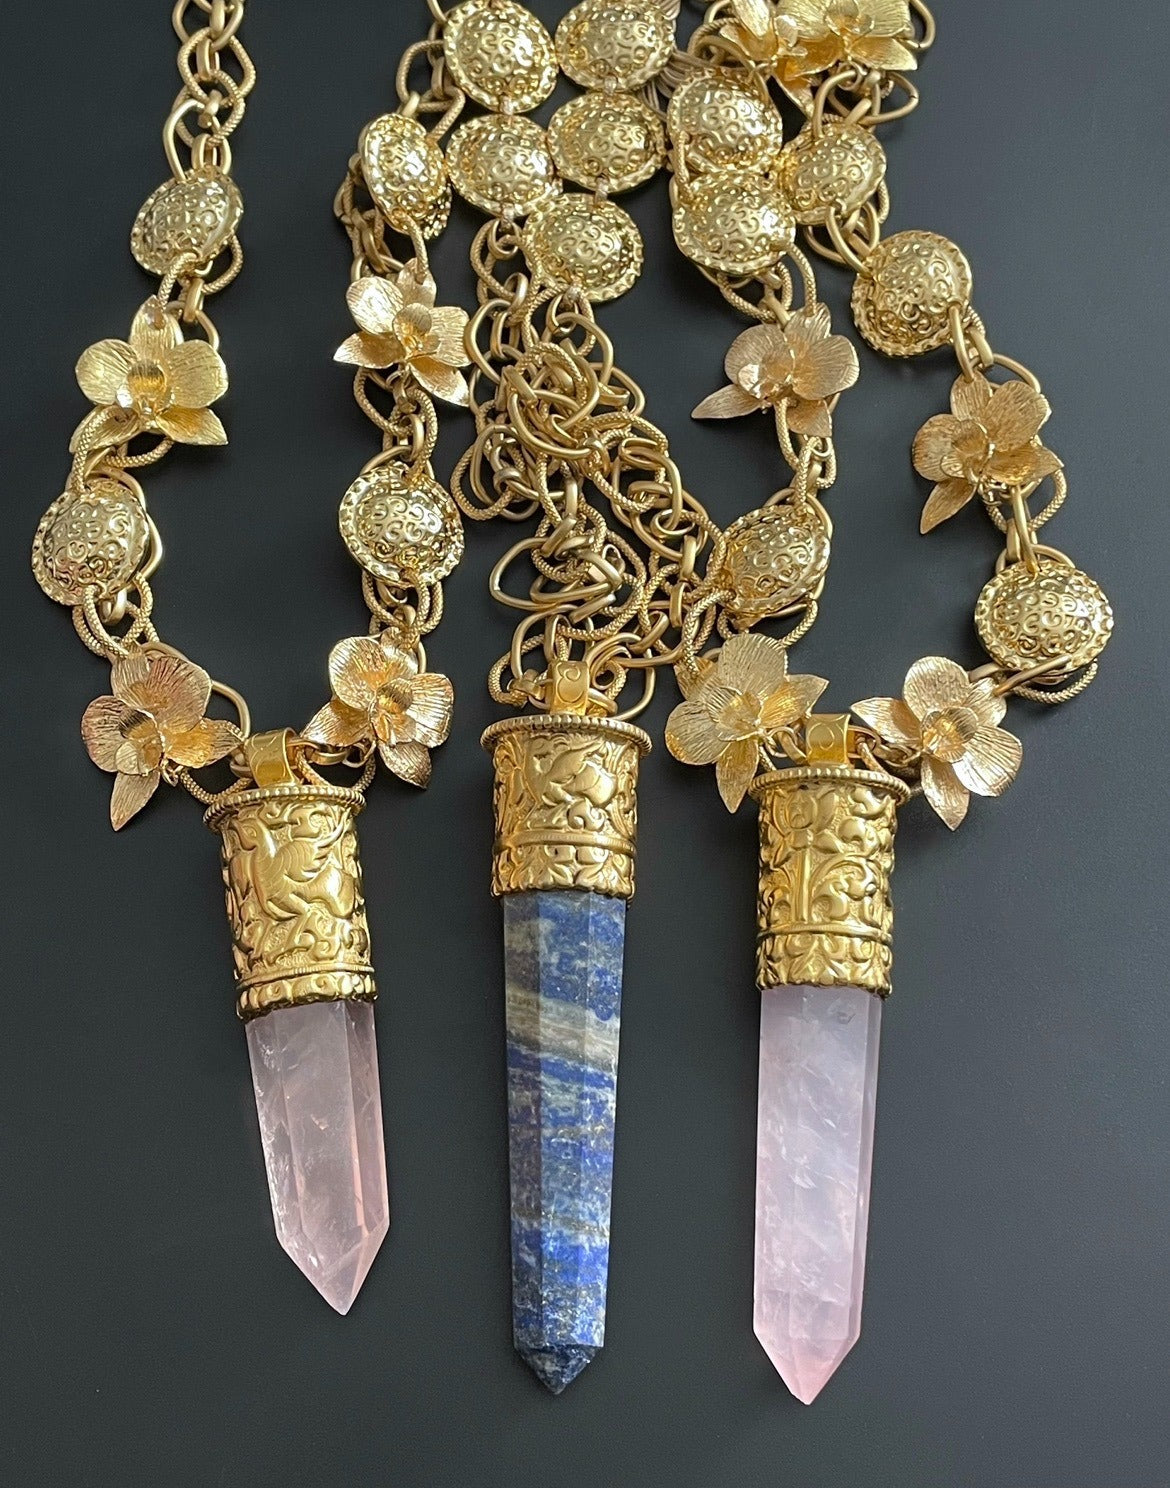 Sundara Rose Quartz Pendant Necklace